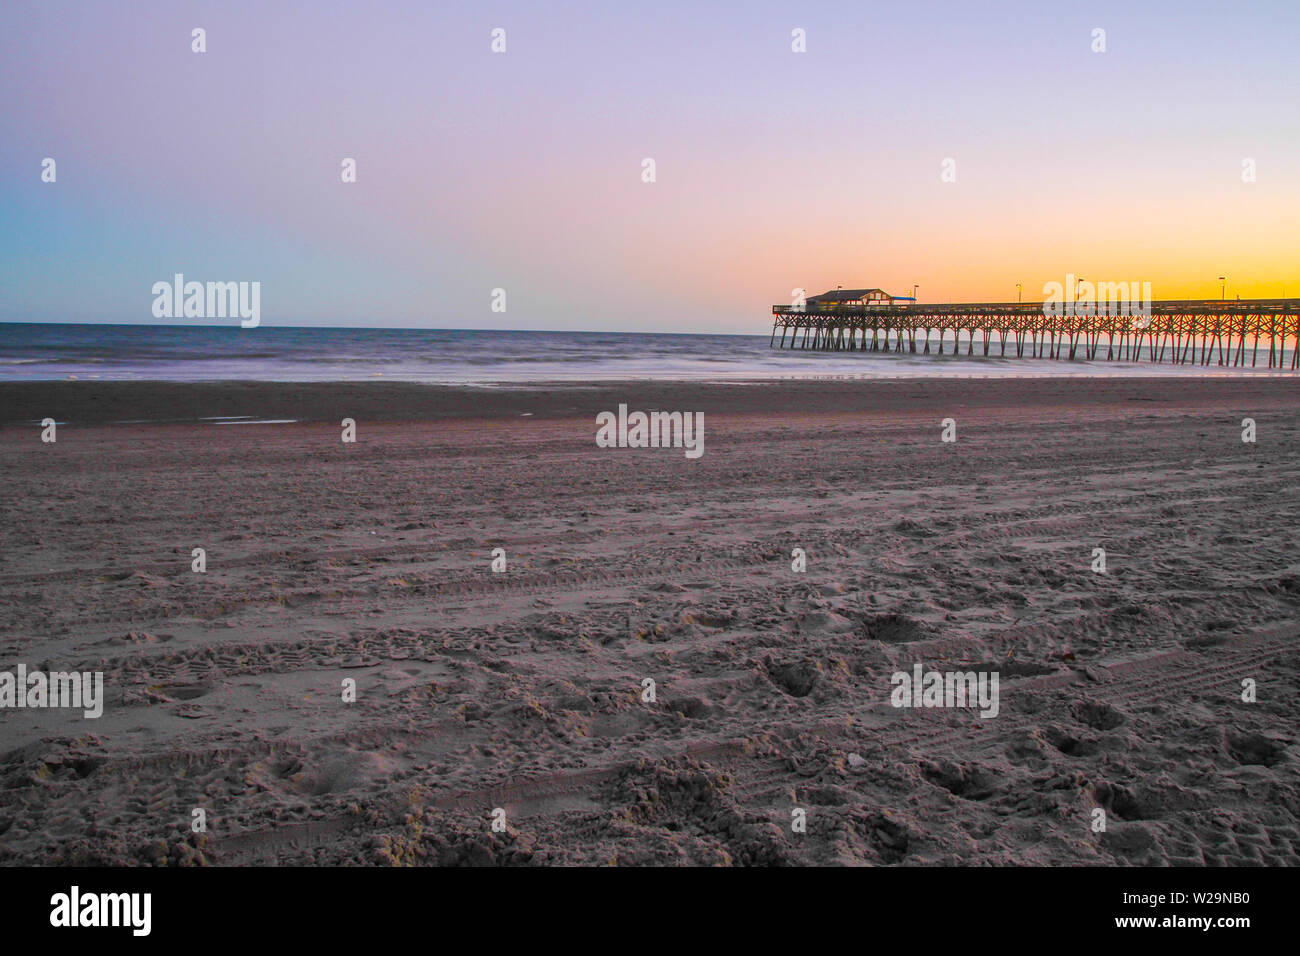 Myrtle Beach State Park pier s'avançant dans l'océan Atlantique avec un fond de ciel coucher de soleil. Myrtle Beach, Caroline du Sud. Banque D'Images